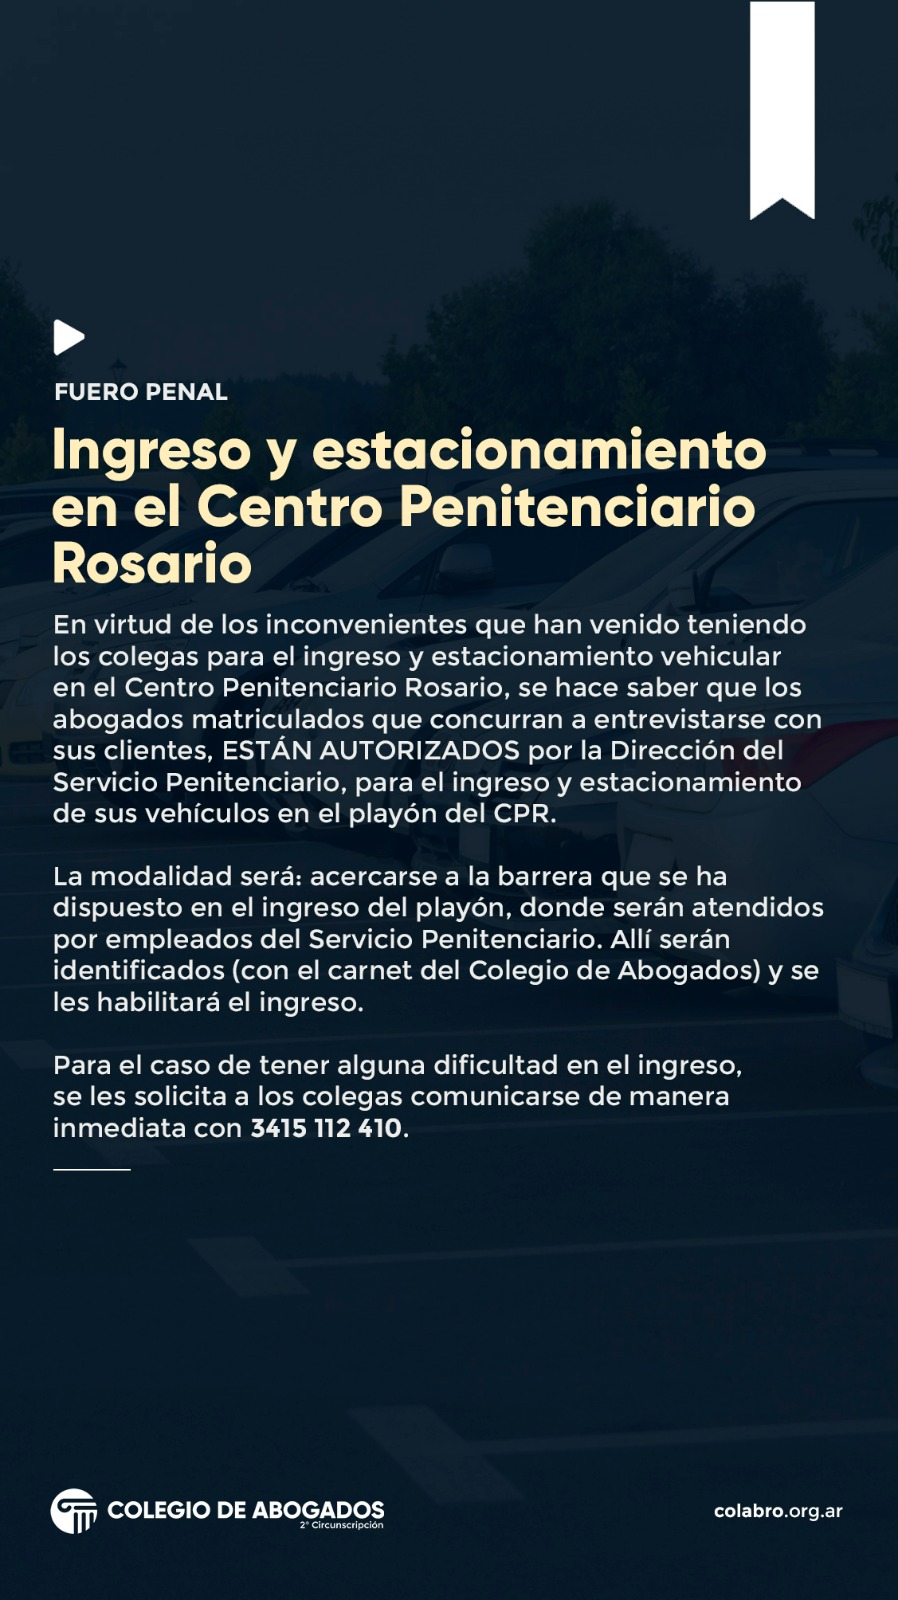 FUERO PENAL:  Ingreso y estacionamiento en el Centro Penitenciario Rosario